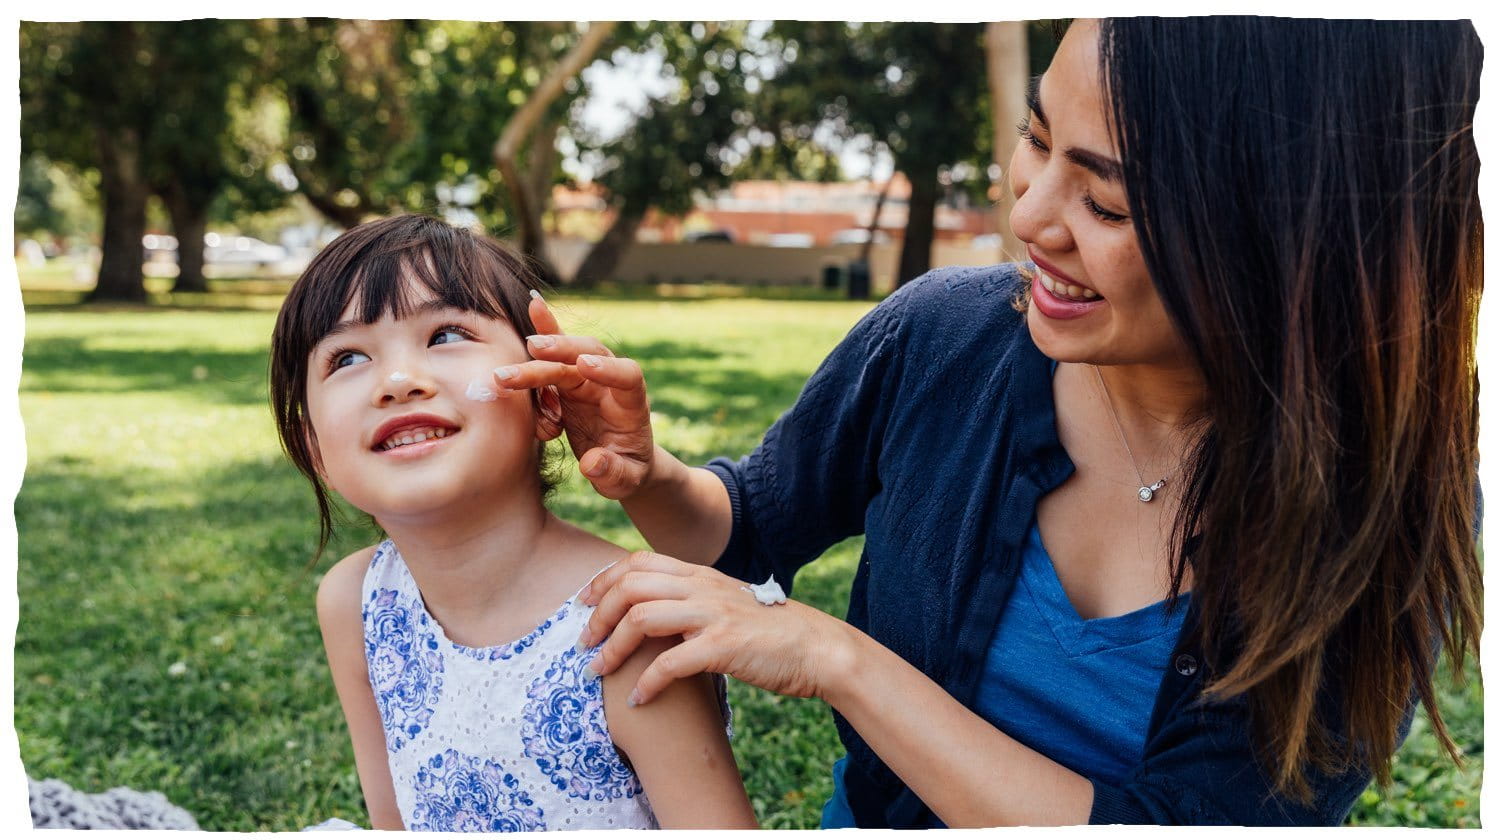 Une femme applique une lotion sur la joue d'un enfant.